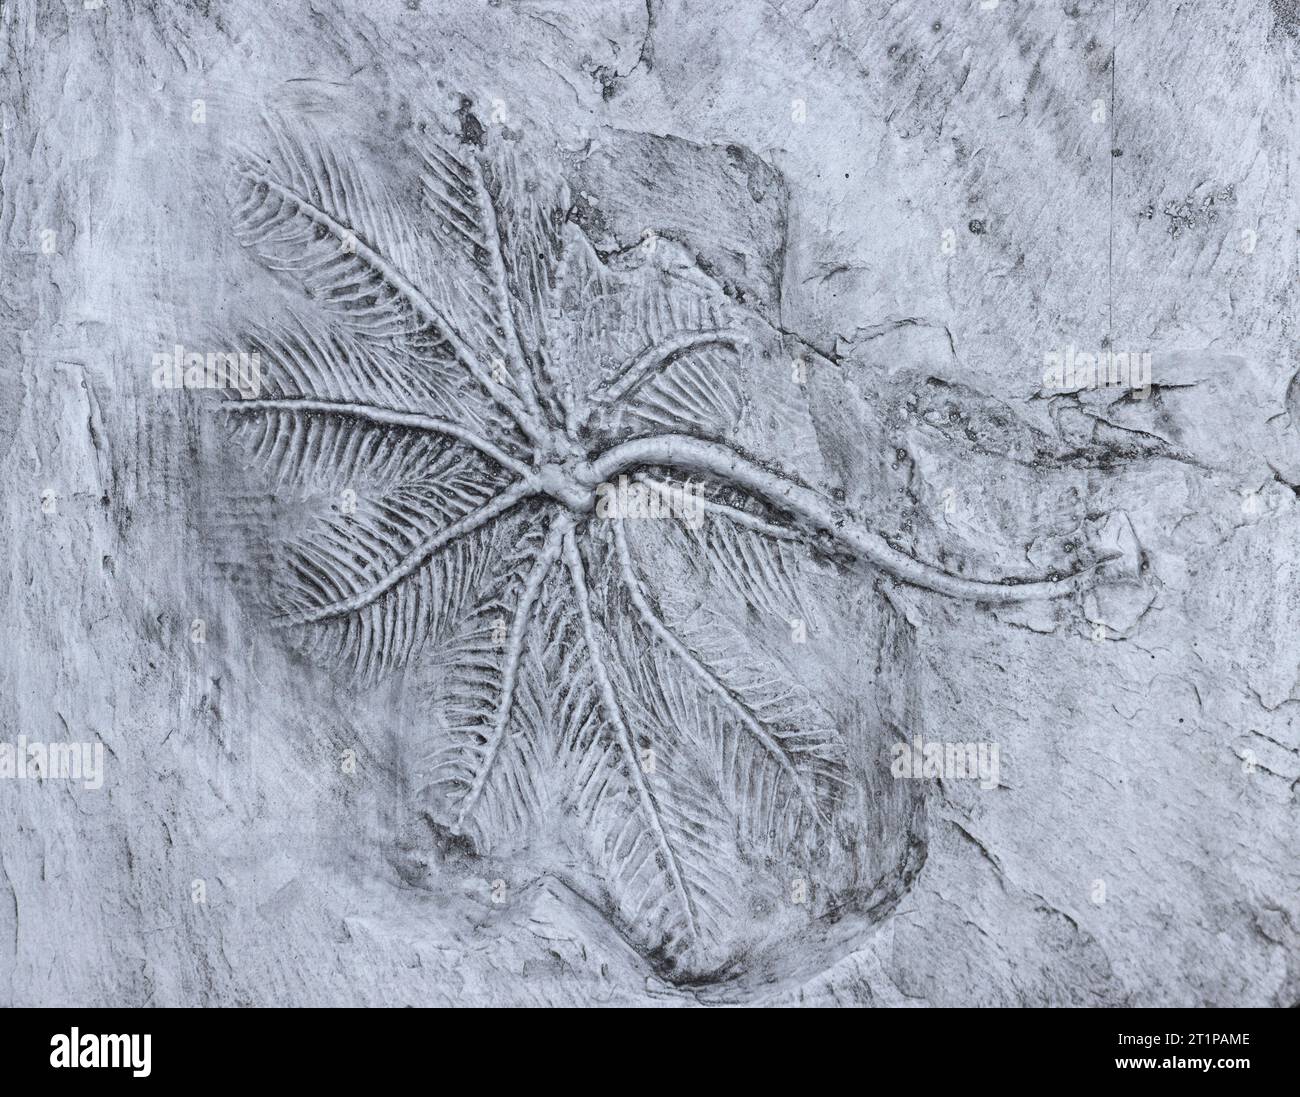 Ce fossile des ardoises de Hunsbruck, en Allemagne, date de plus de 400 millions d'années. Ce crinoïde fossile montre les bras délicats d'alimentation étendus. Banque D'Images